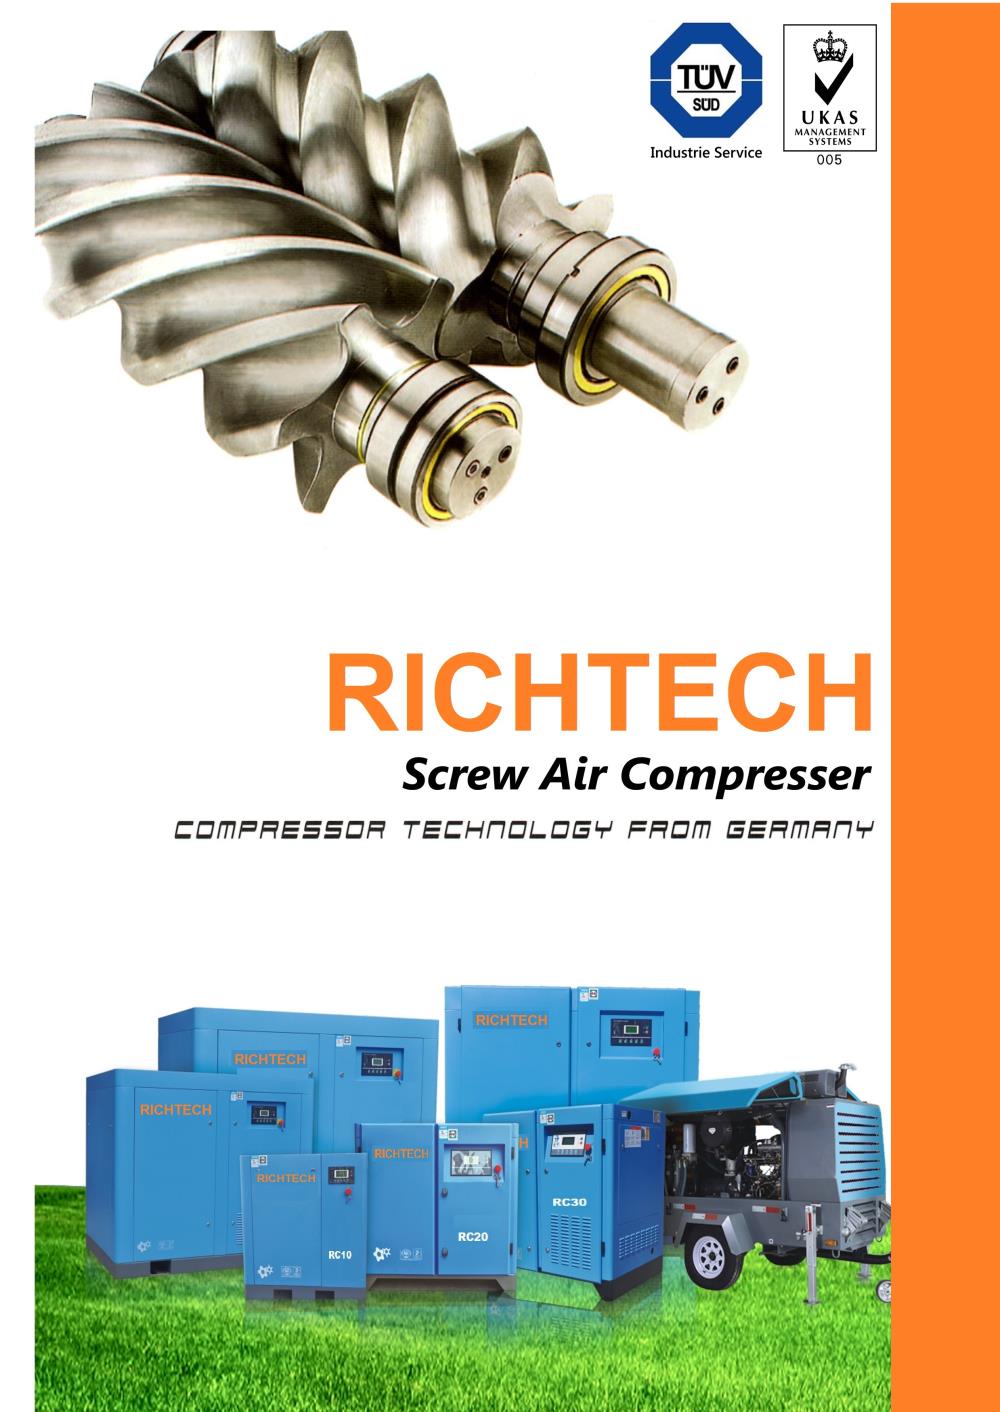 ปั๊มลม , เครื่อง ปั๊มลม สกรู , SCREW AIR COMPRESSOR,ปั๊มลม , เครื่อง ปั๊มลม  , ปั๊มลมสกรู ,Richtech,Machinery and Process Equipment/Compressors/Air Compressor